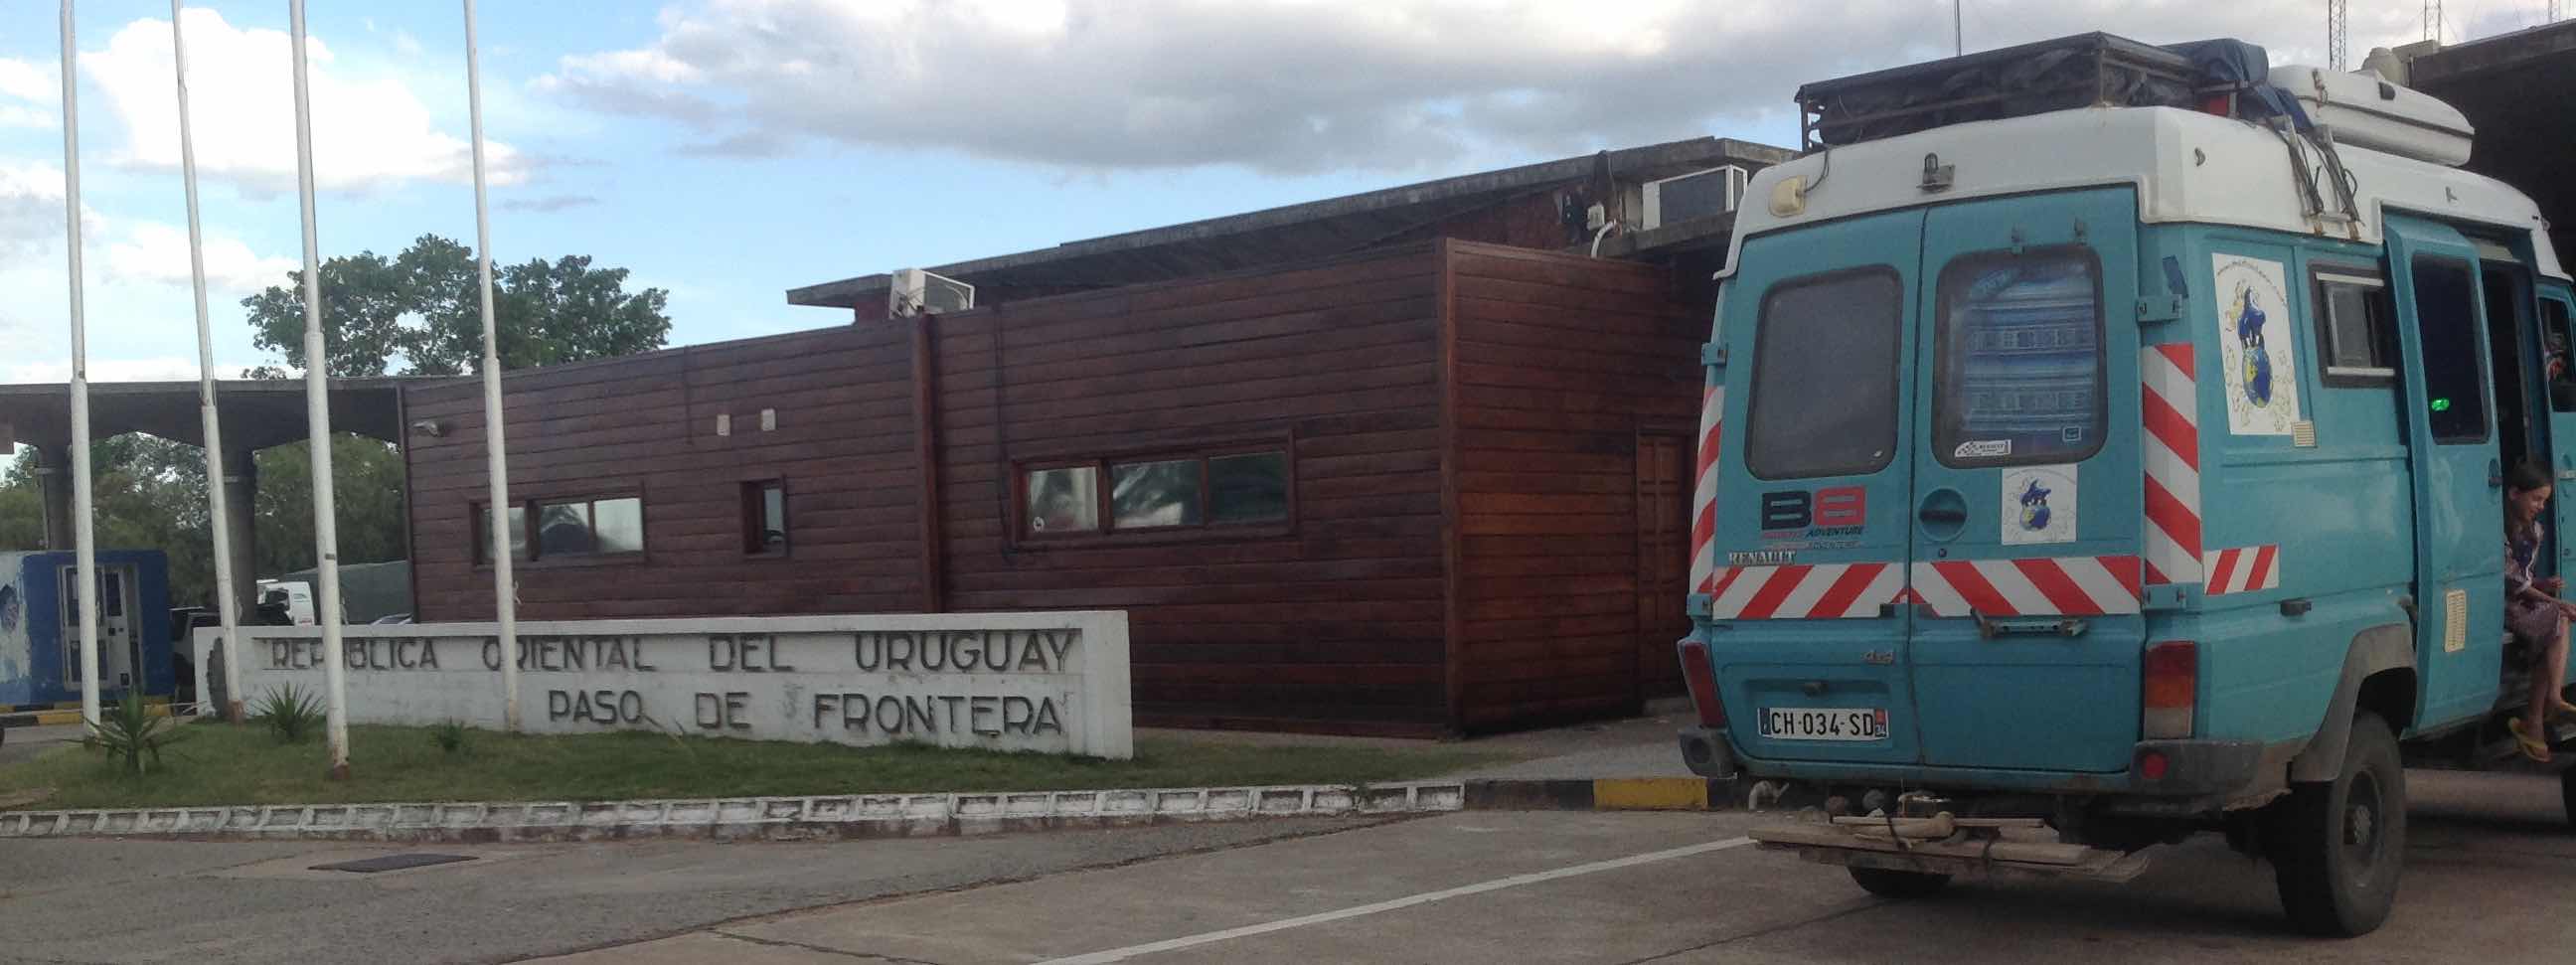 frontiere_uruguay